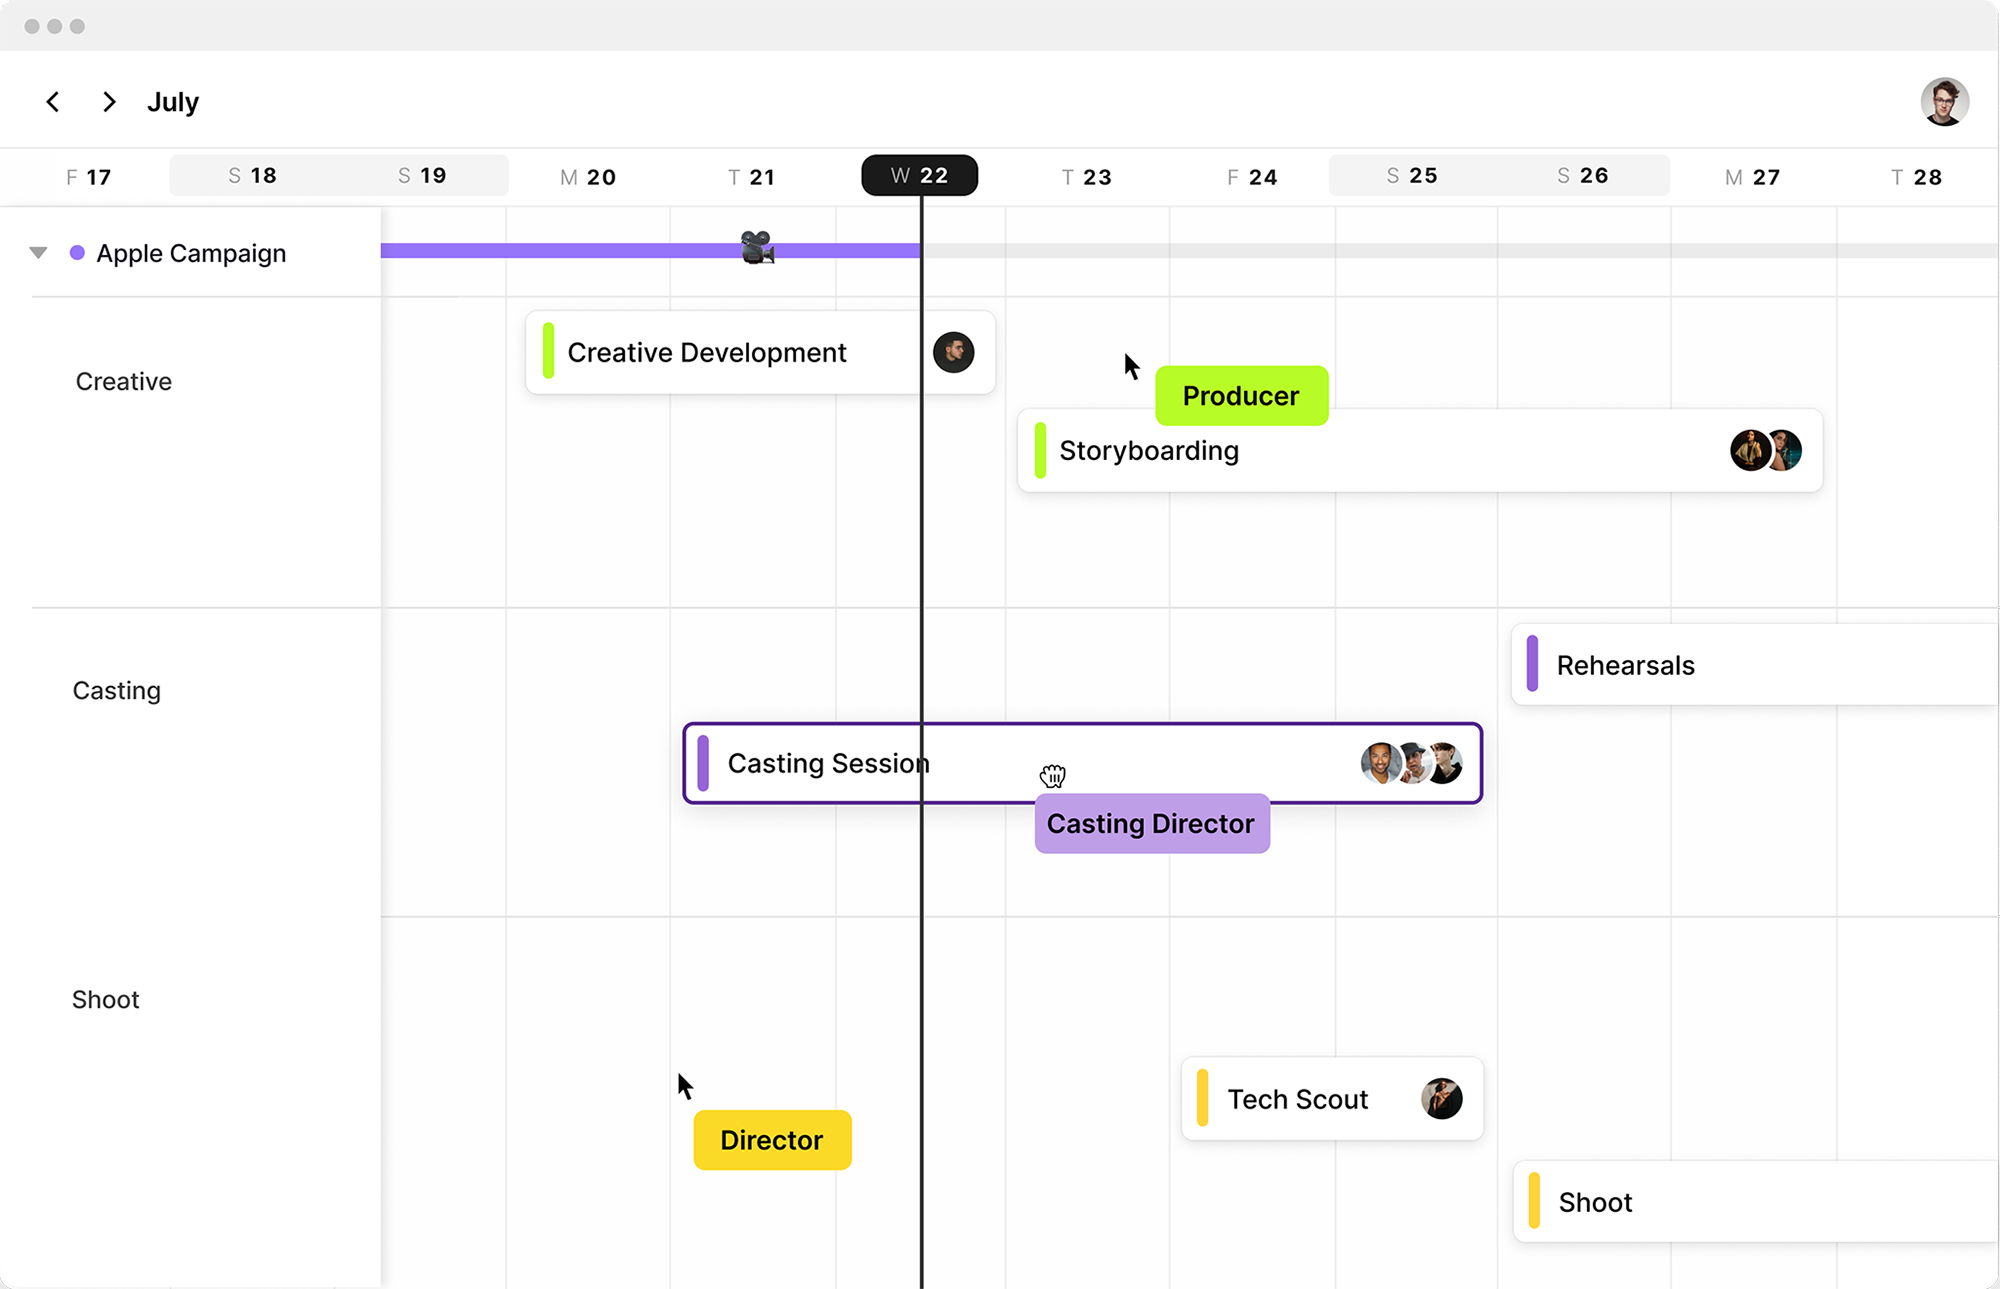 Screen shot of Assemble's calendar scheduling feature